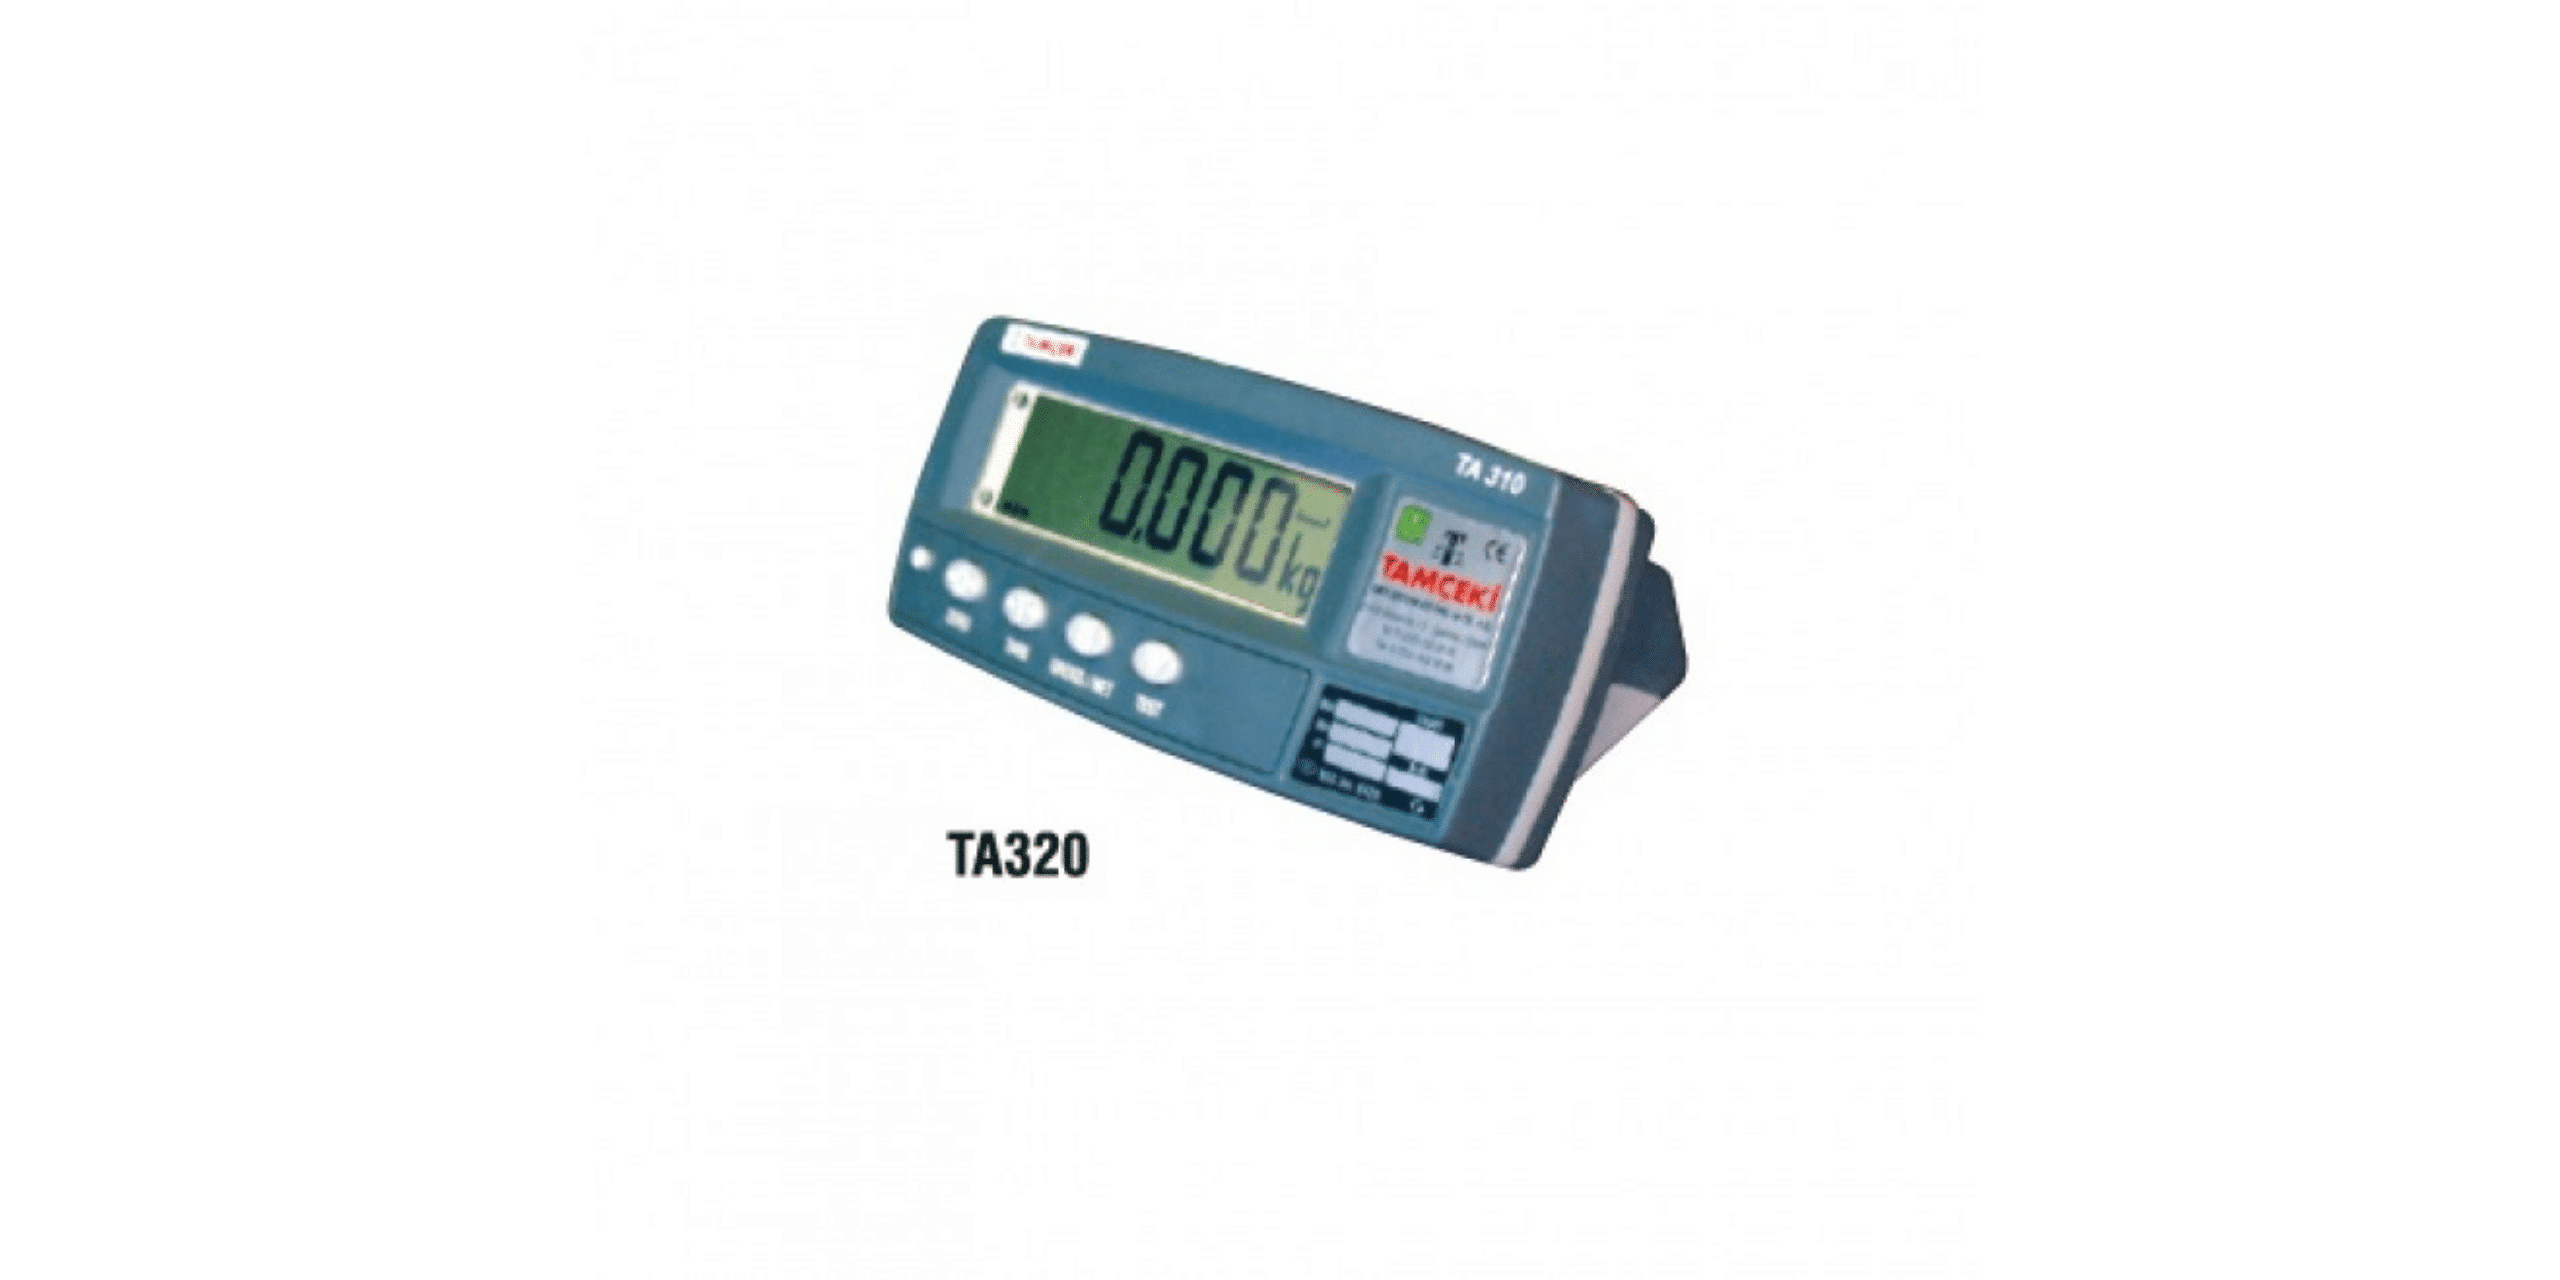 TA300 Series Weighing Indicator